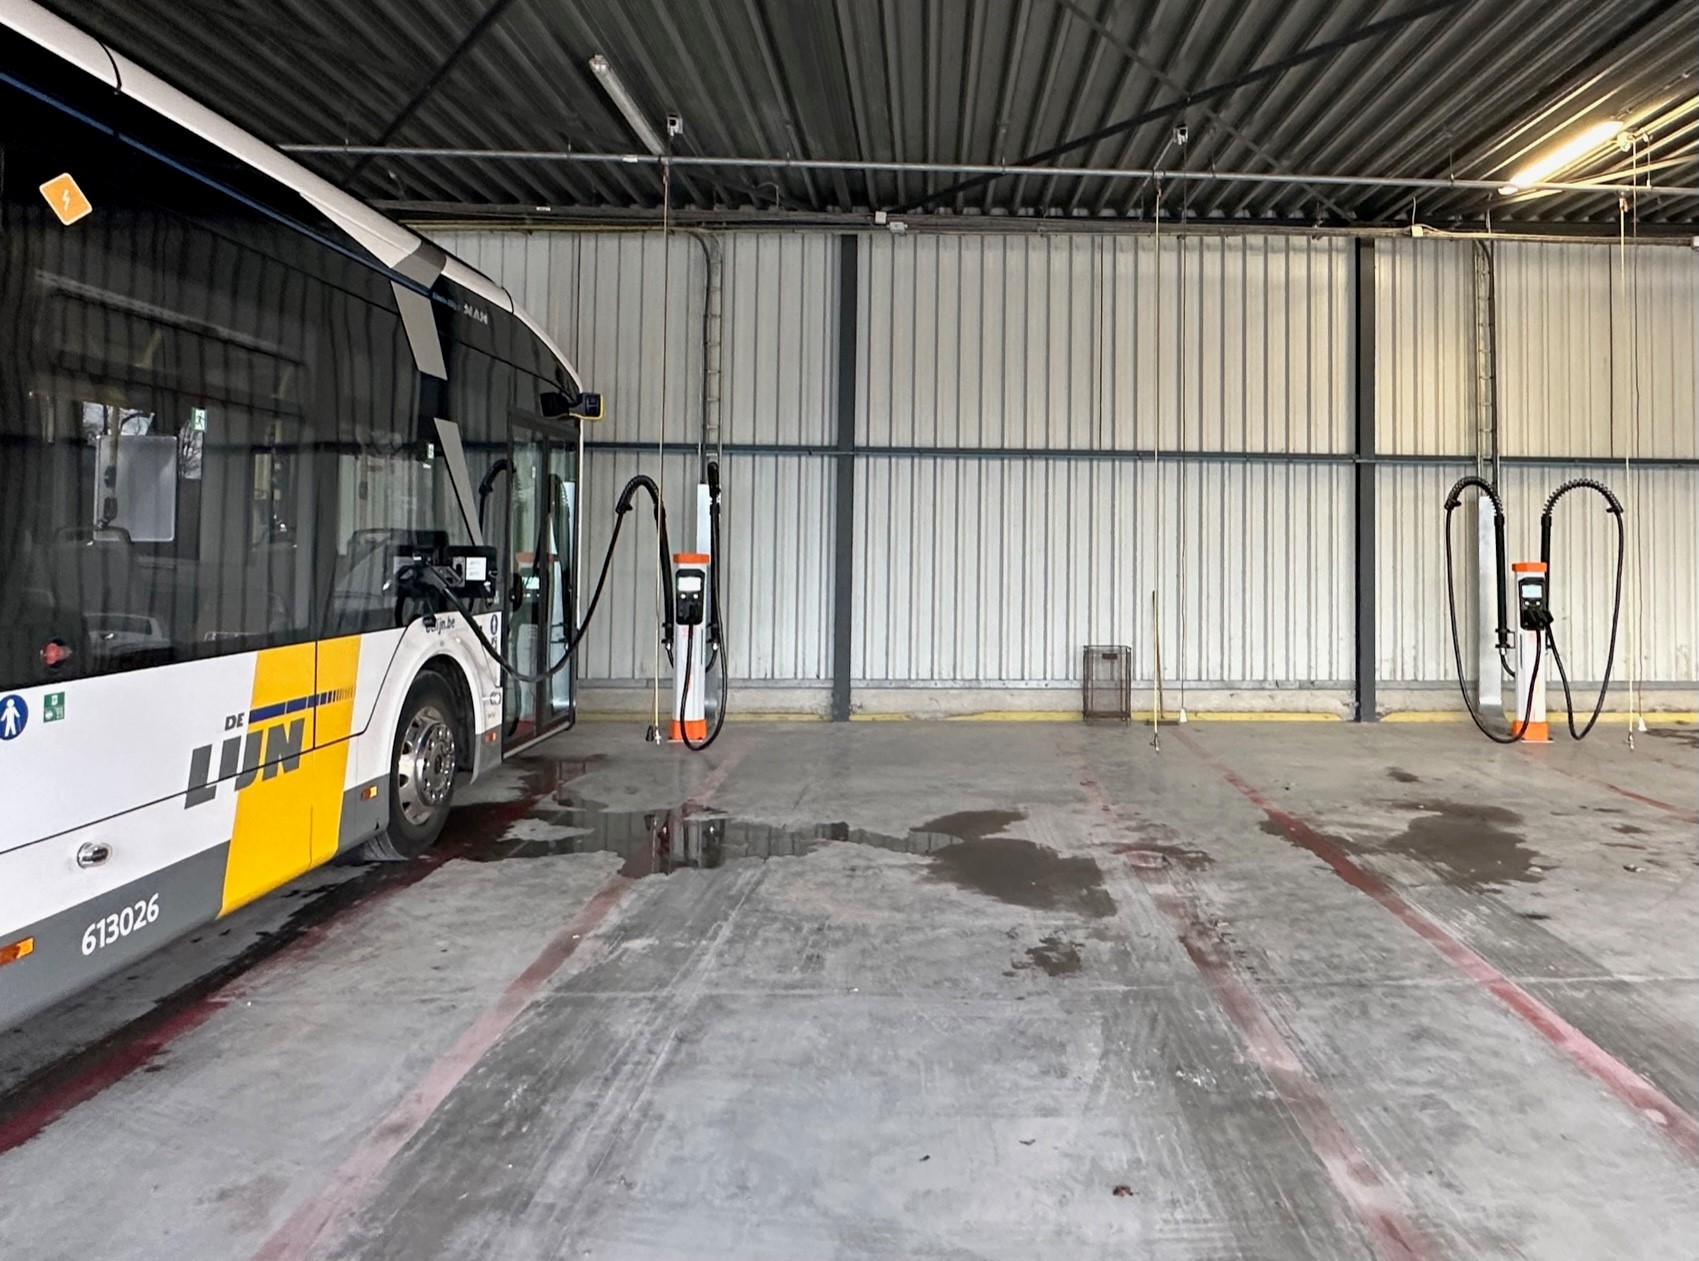 Bus depot De Lijn Vanhoorebeke / Coachpartners  te Maldegem 600kW DC charging Kempower.